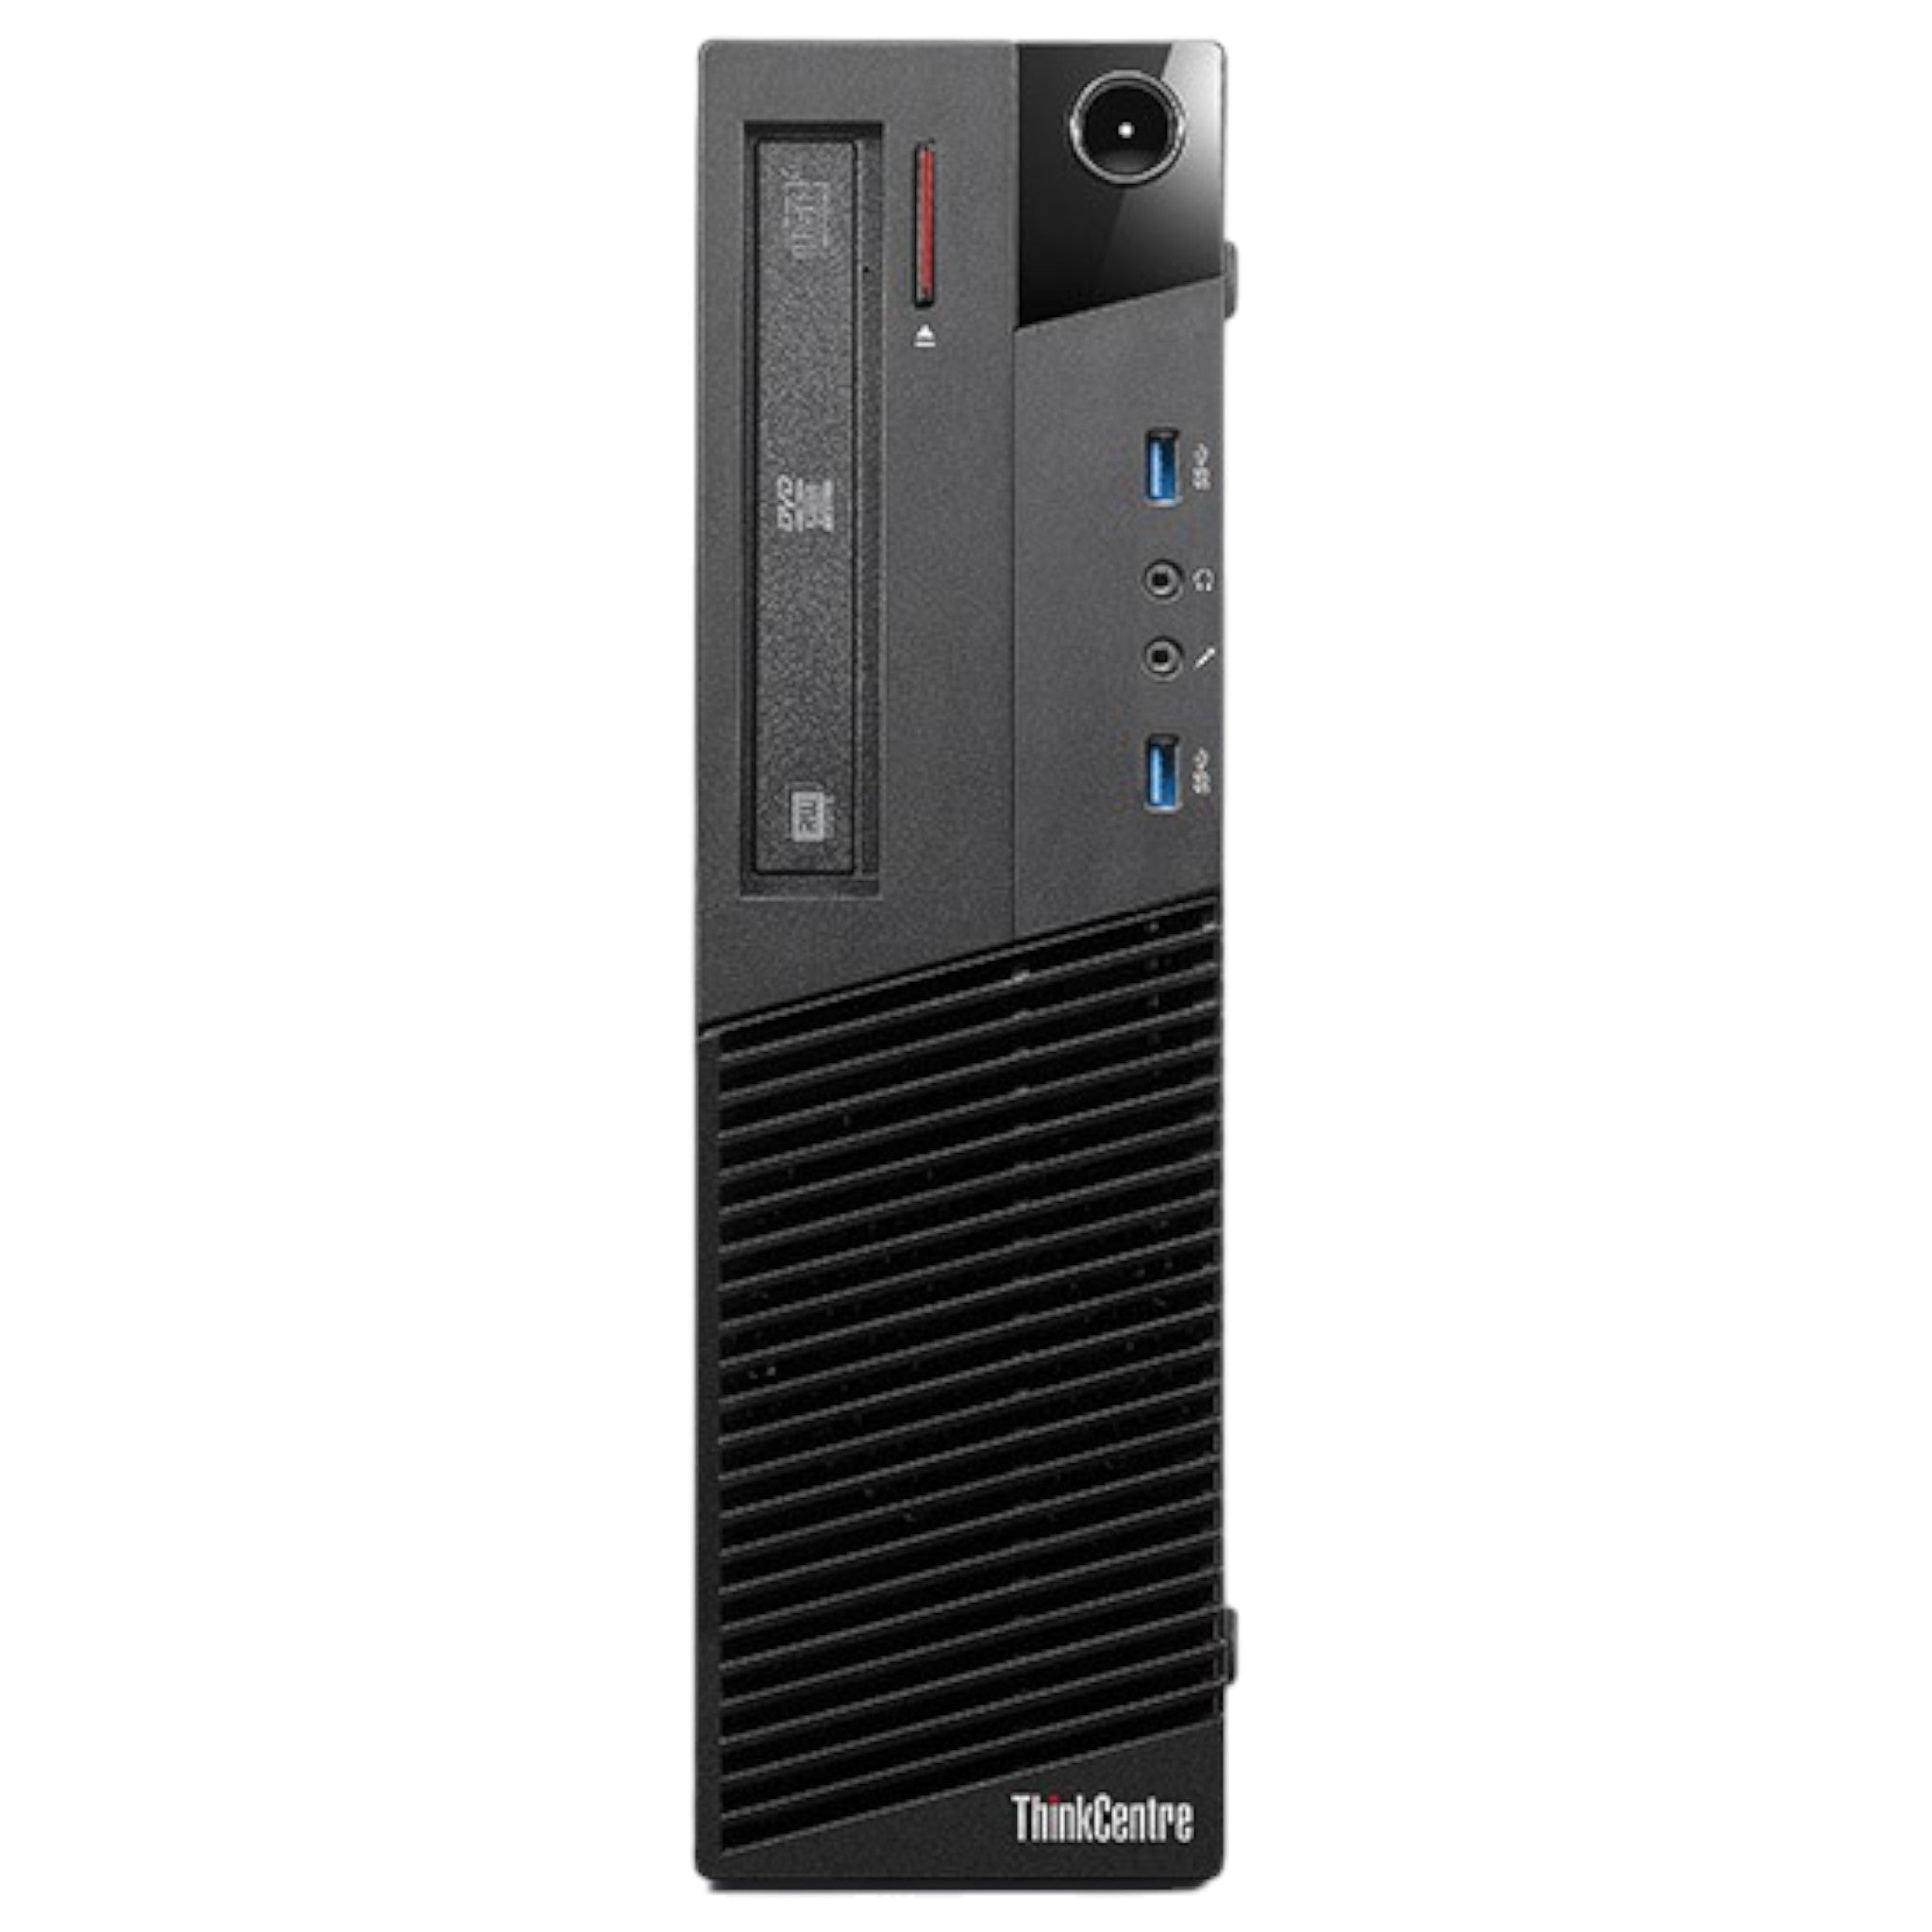 Lenovo ThinkCentre M83 SFF | G3220 | 4 GB | 500 GB HDD | DVD/RW - computify